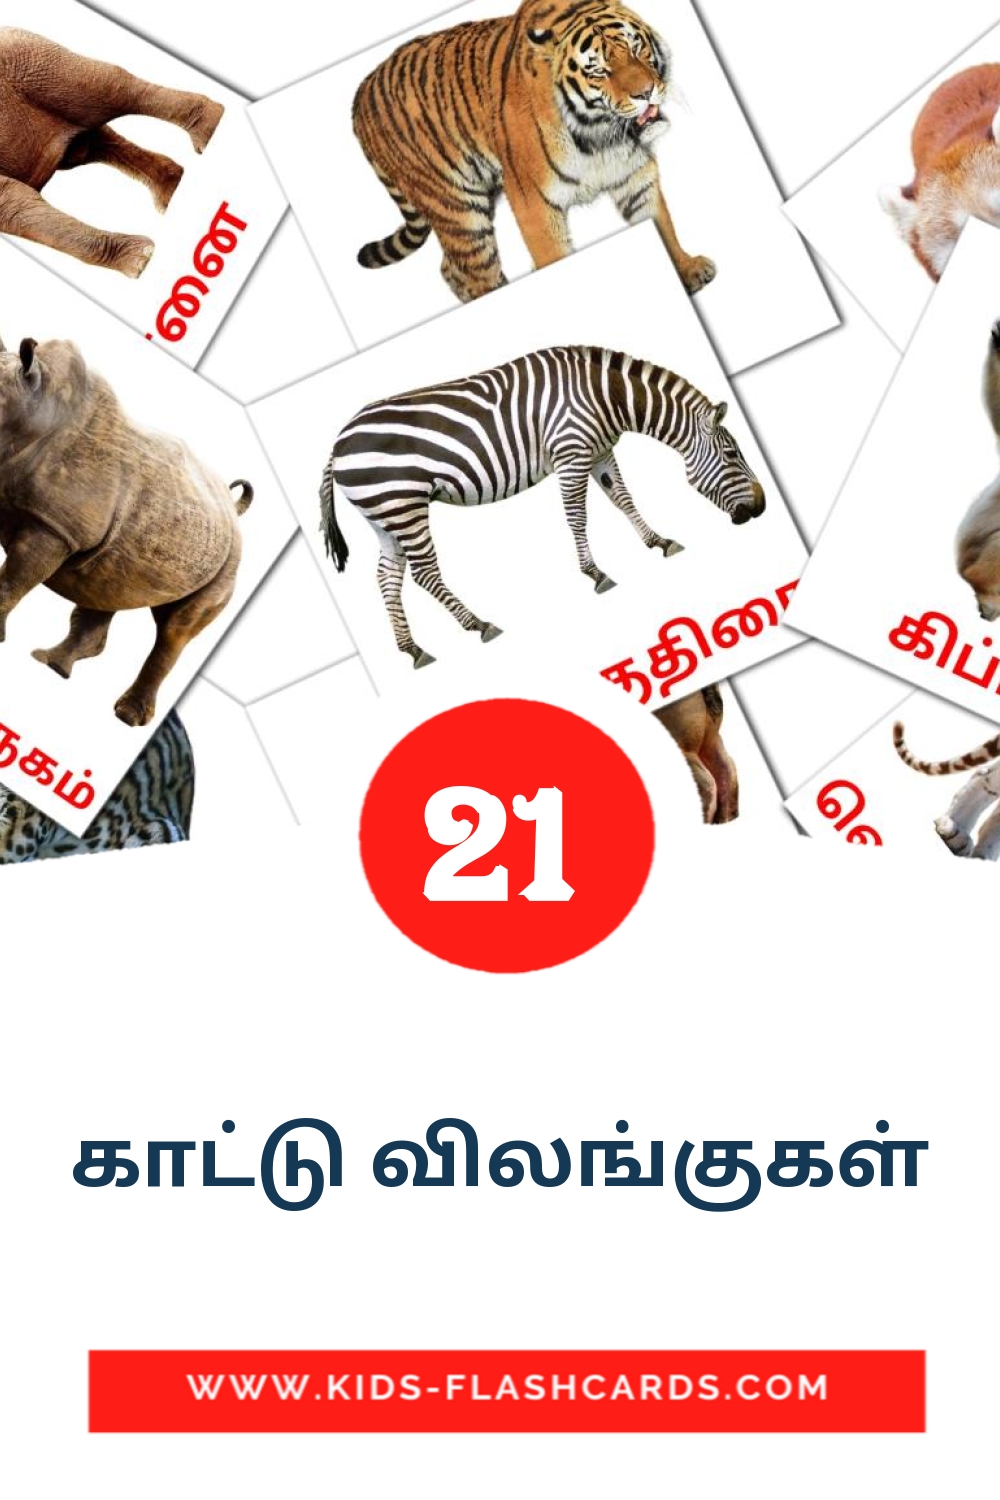 21 tarjetas didacticas de காட்டு விலங்குகள் para el jardín de infancia en tamil